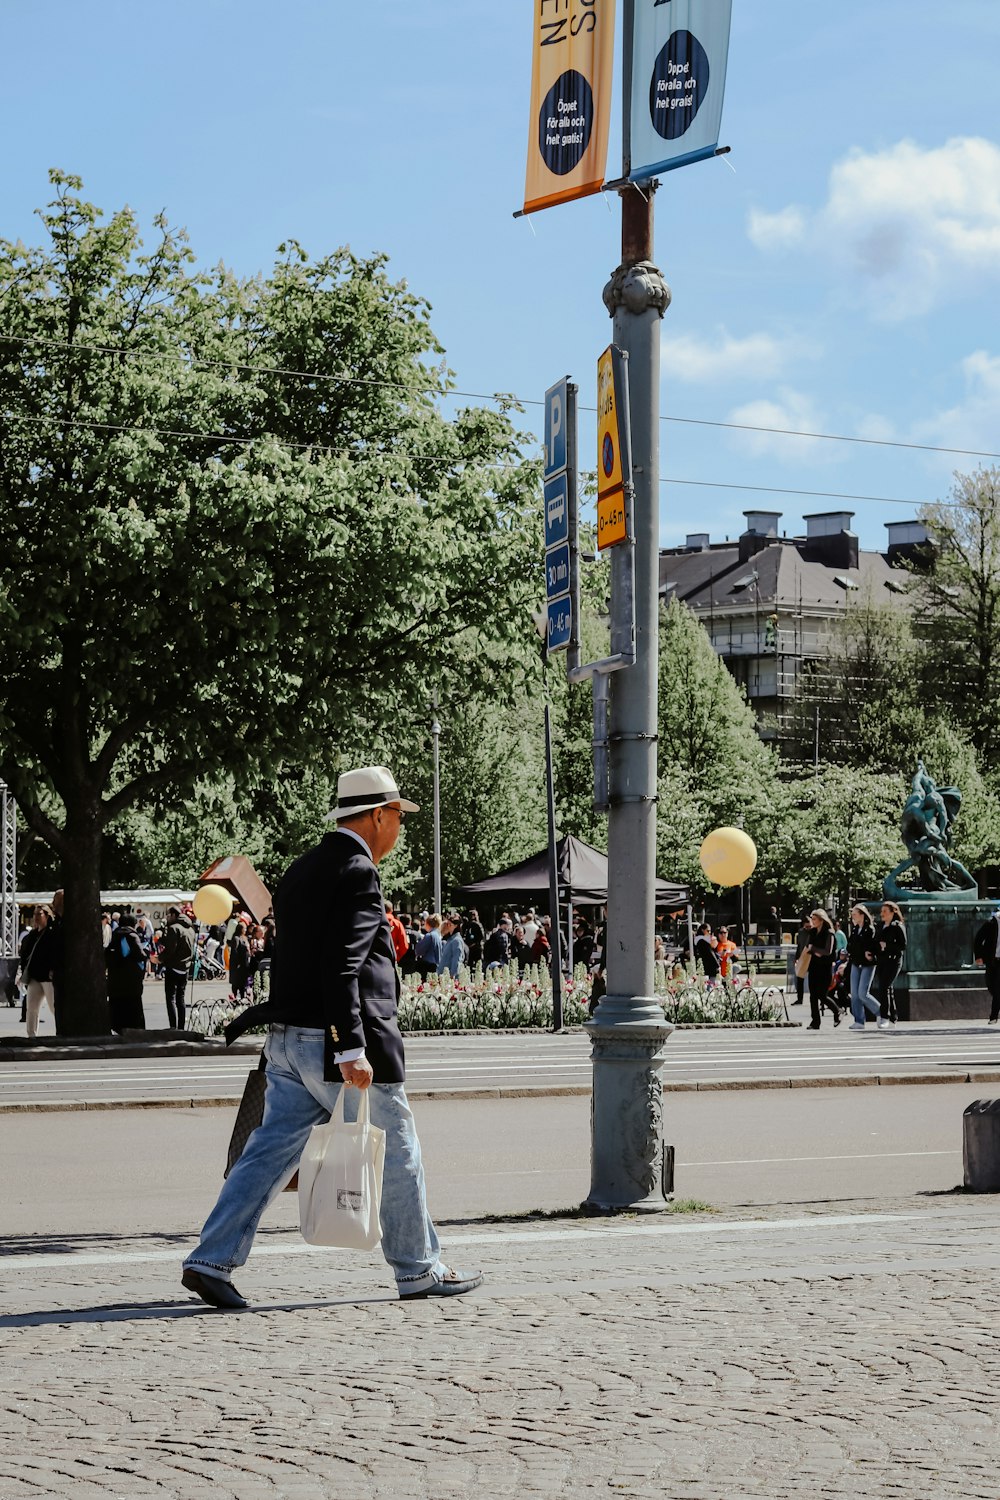 a man walking down a street next to a street sign